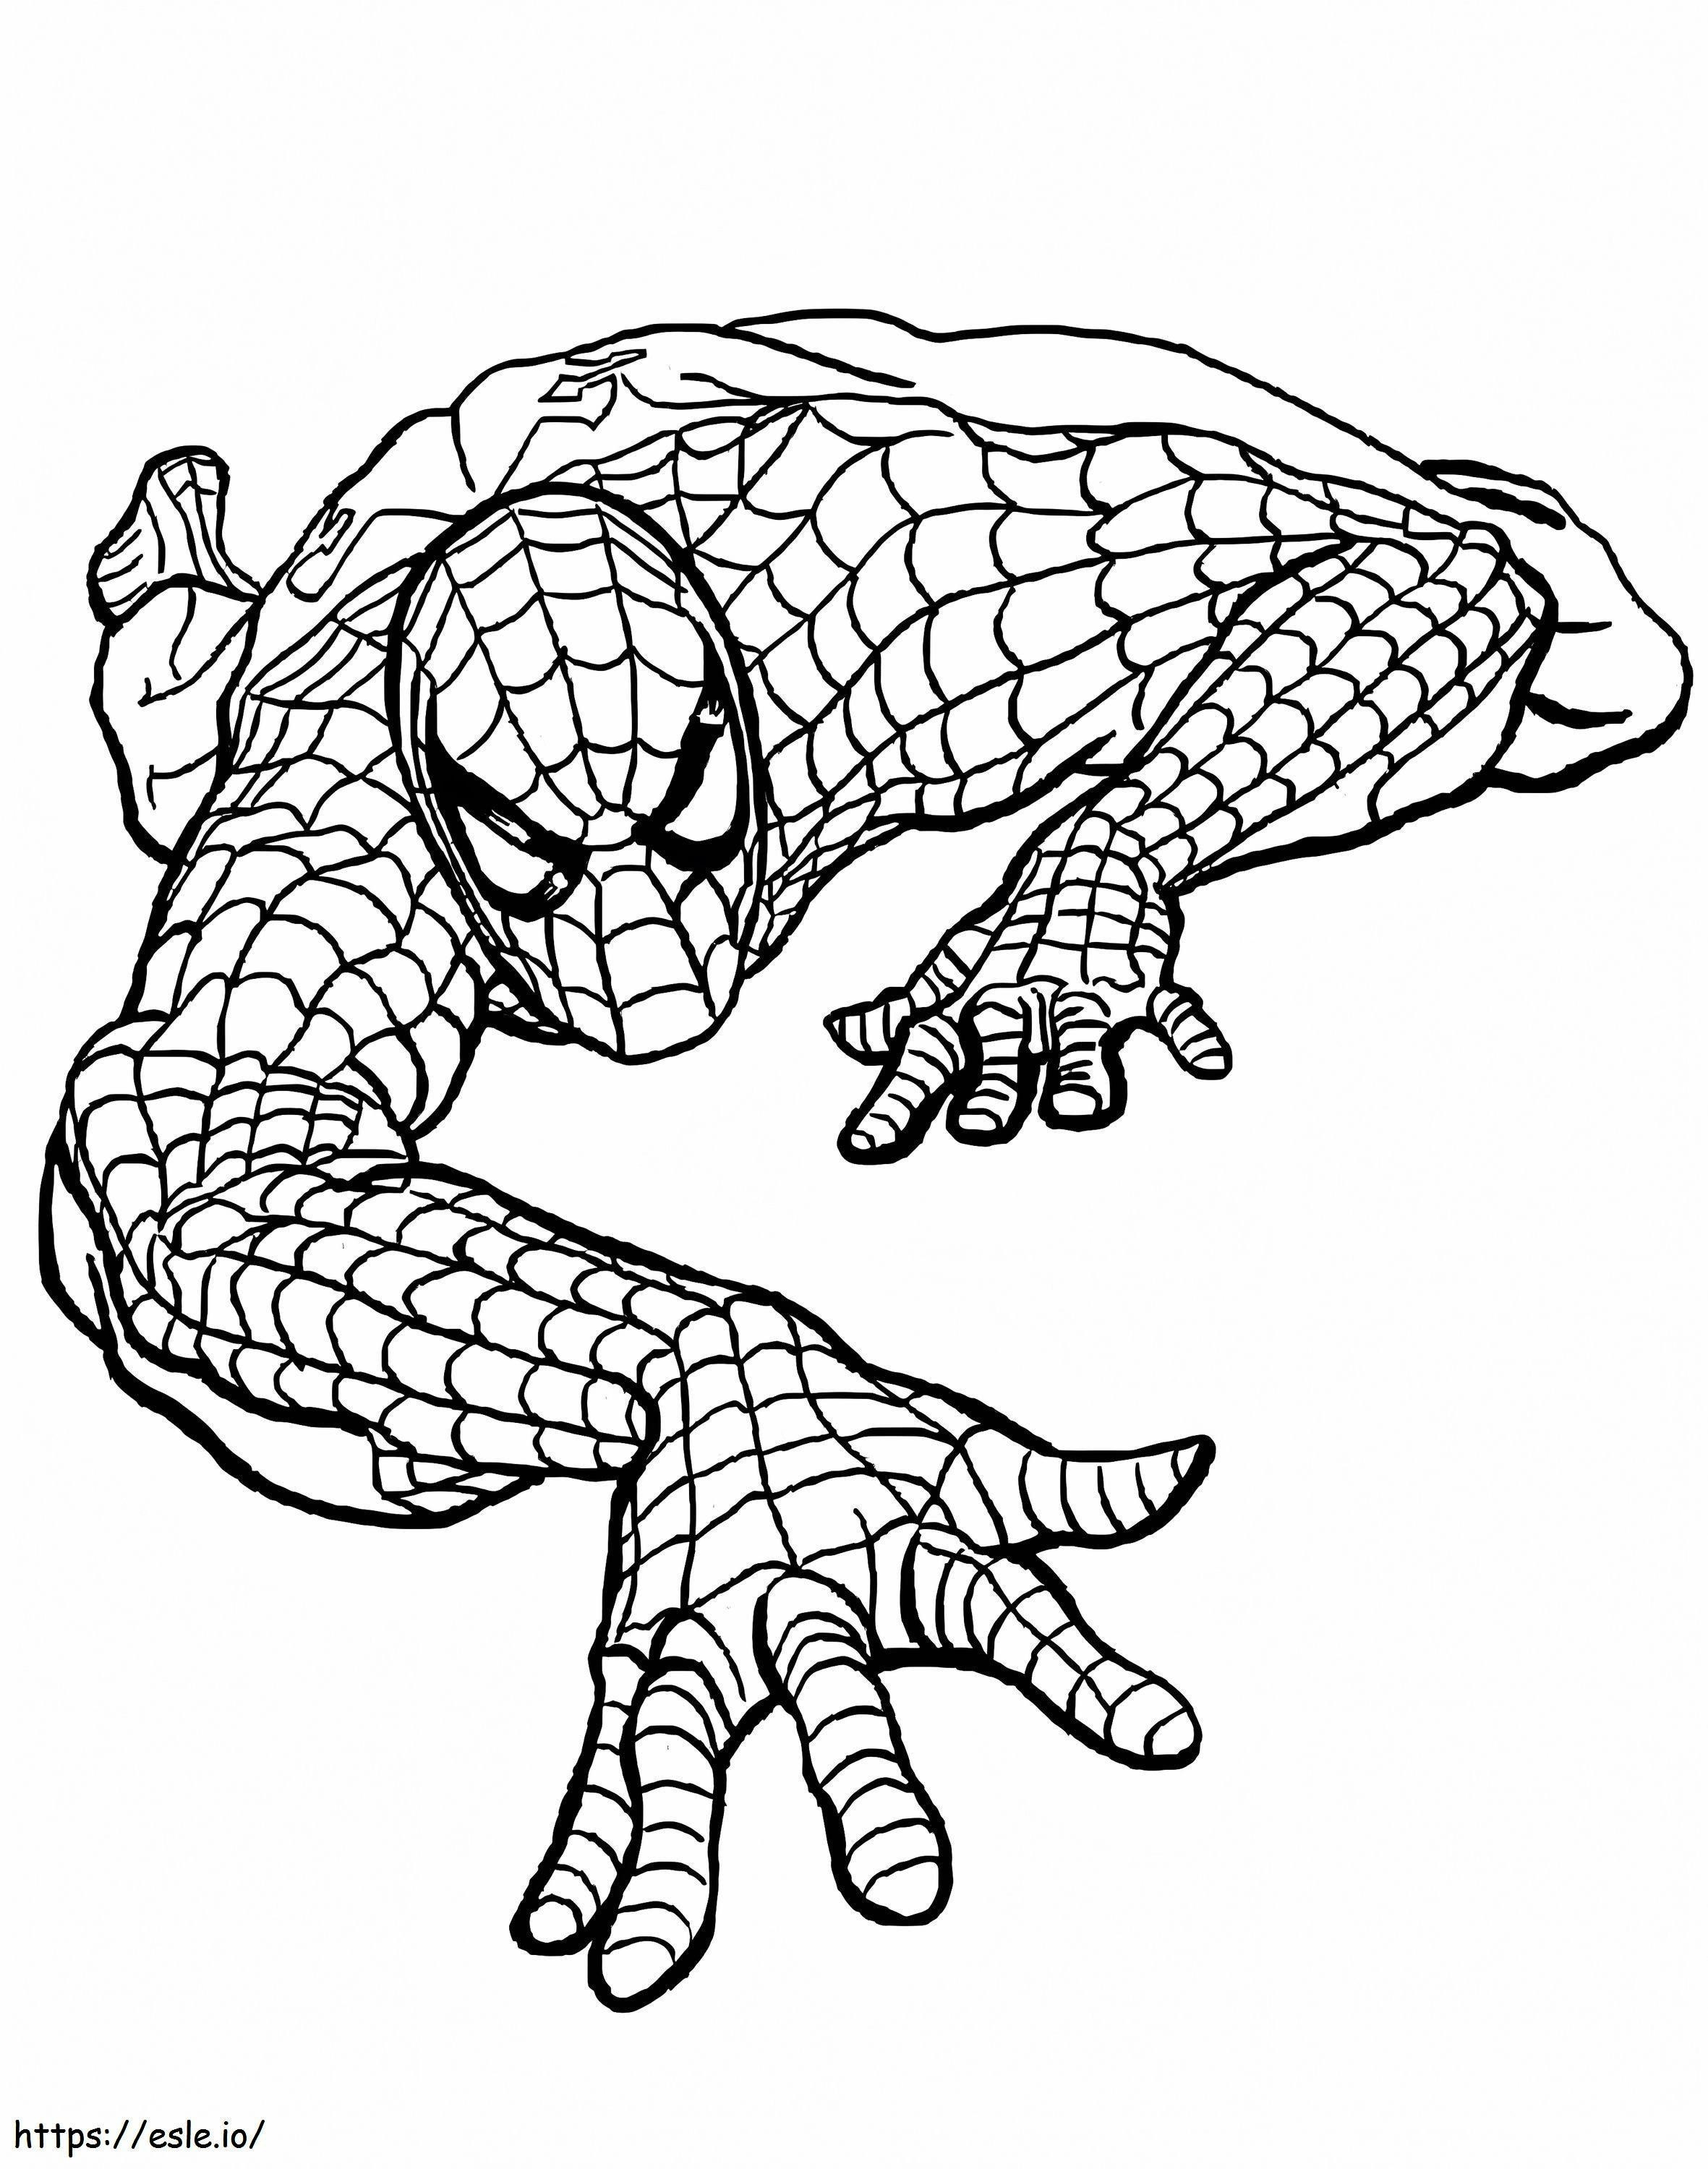 Homem-Aranha em ação para colorir